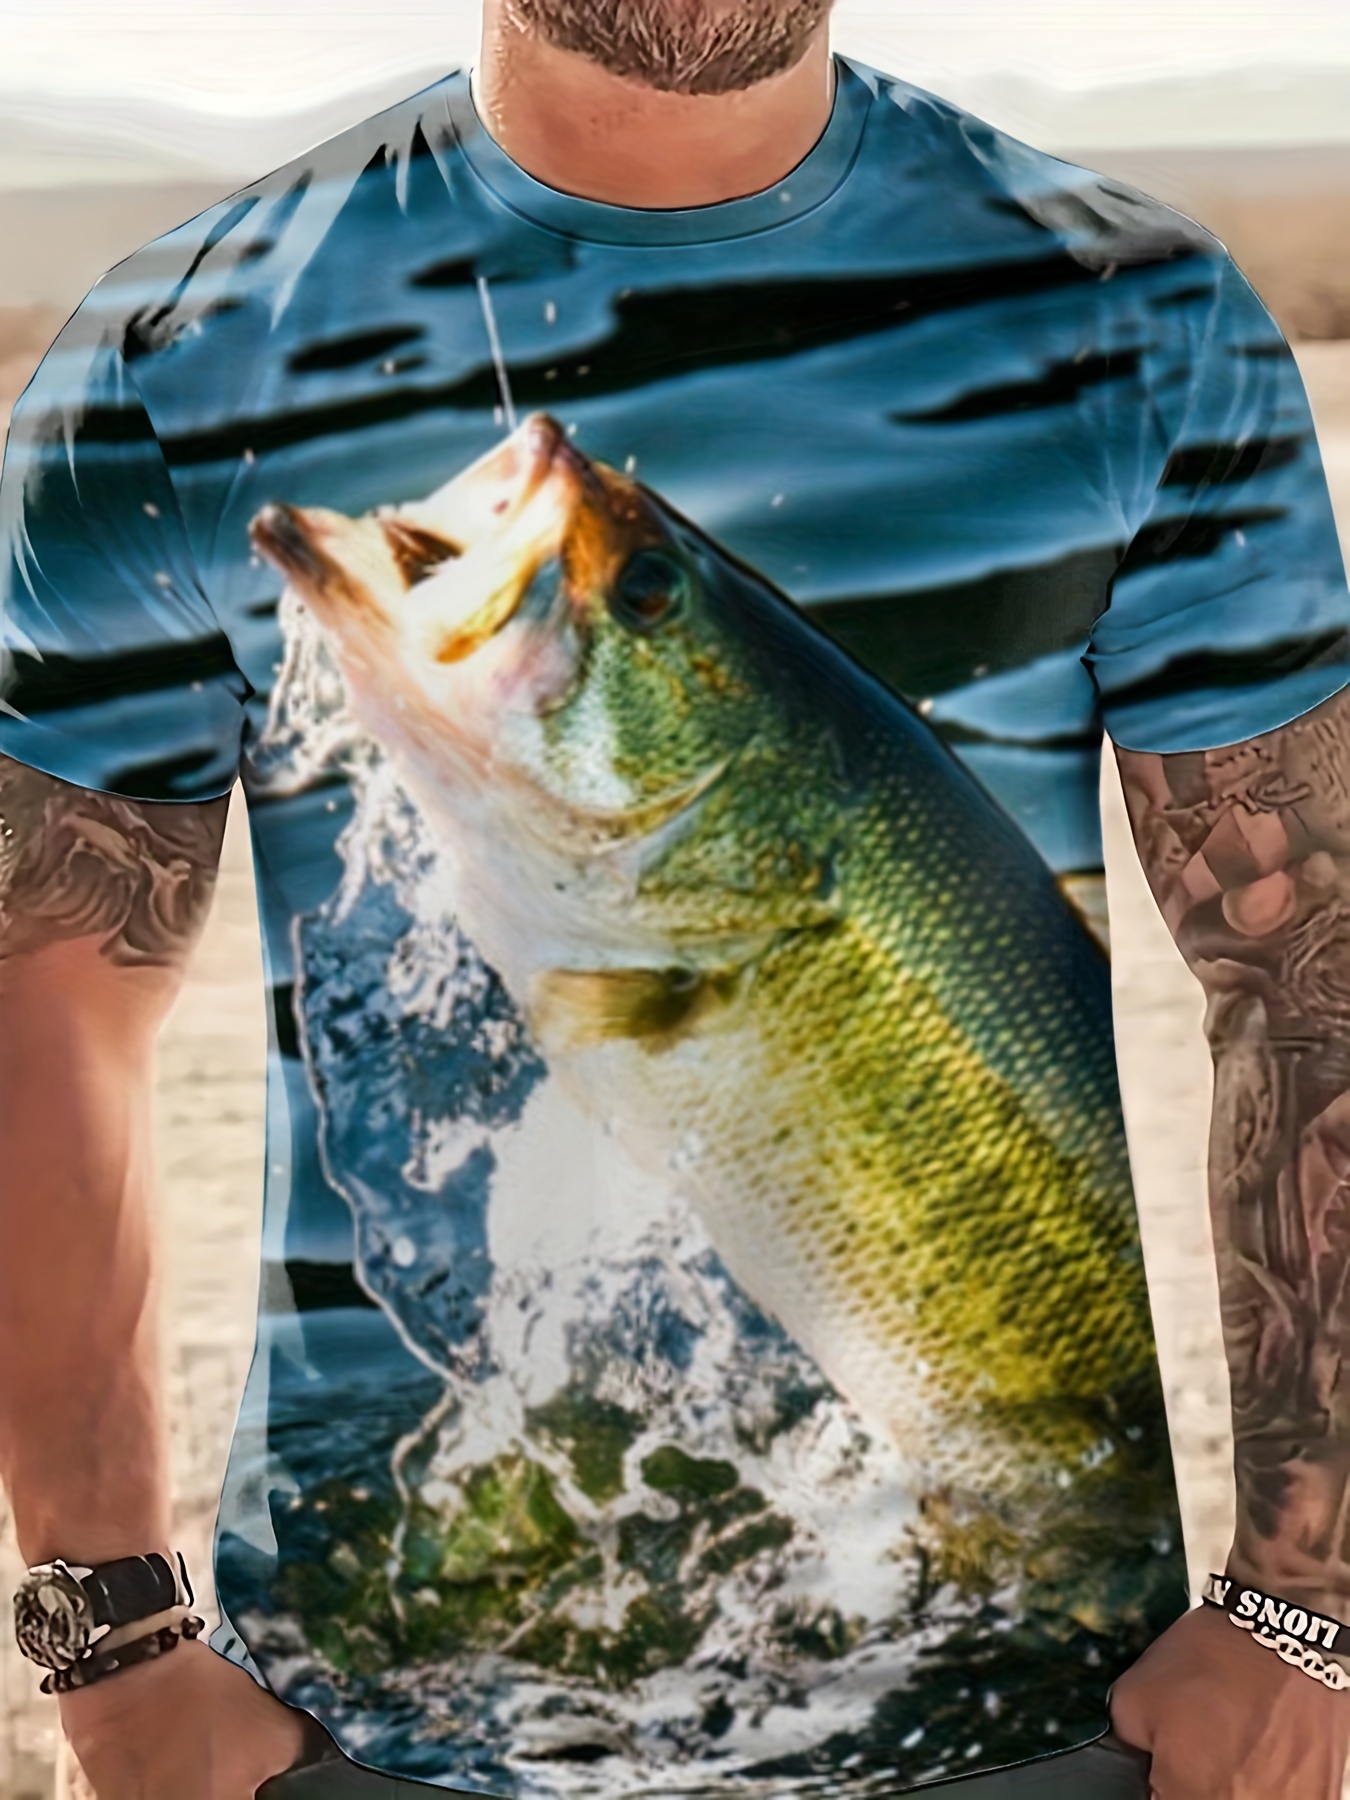 Fishing Shirts For Men - Temu